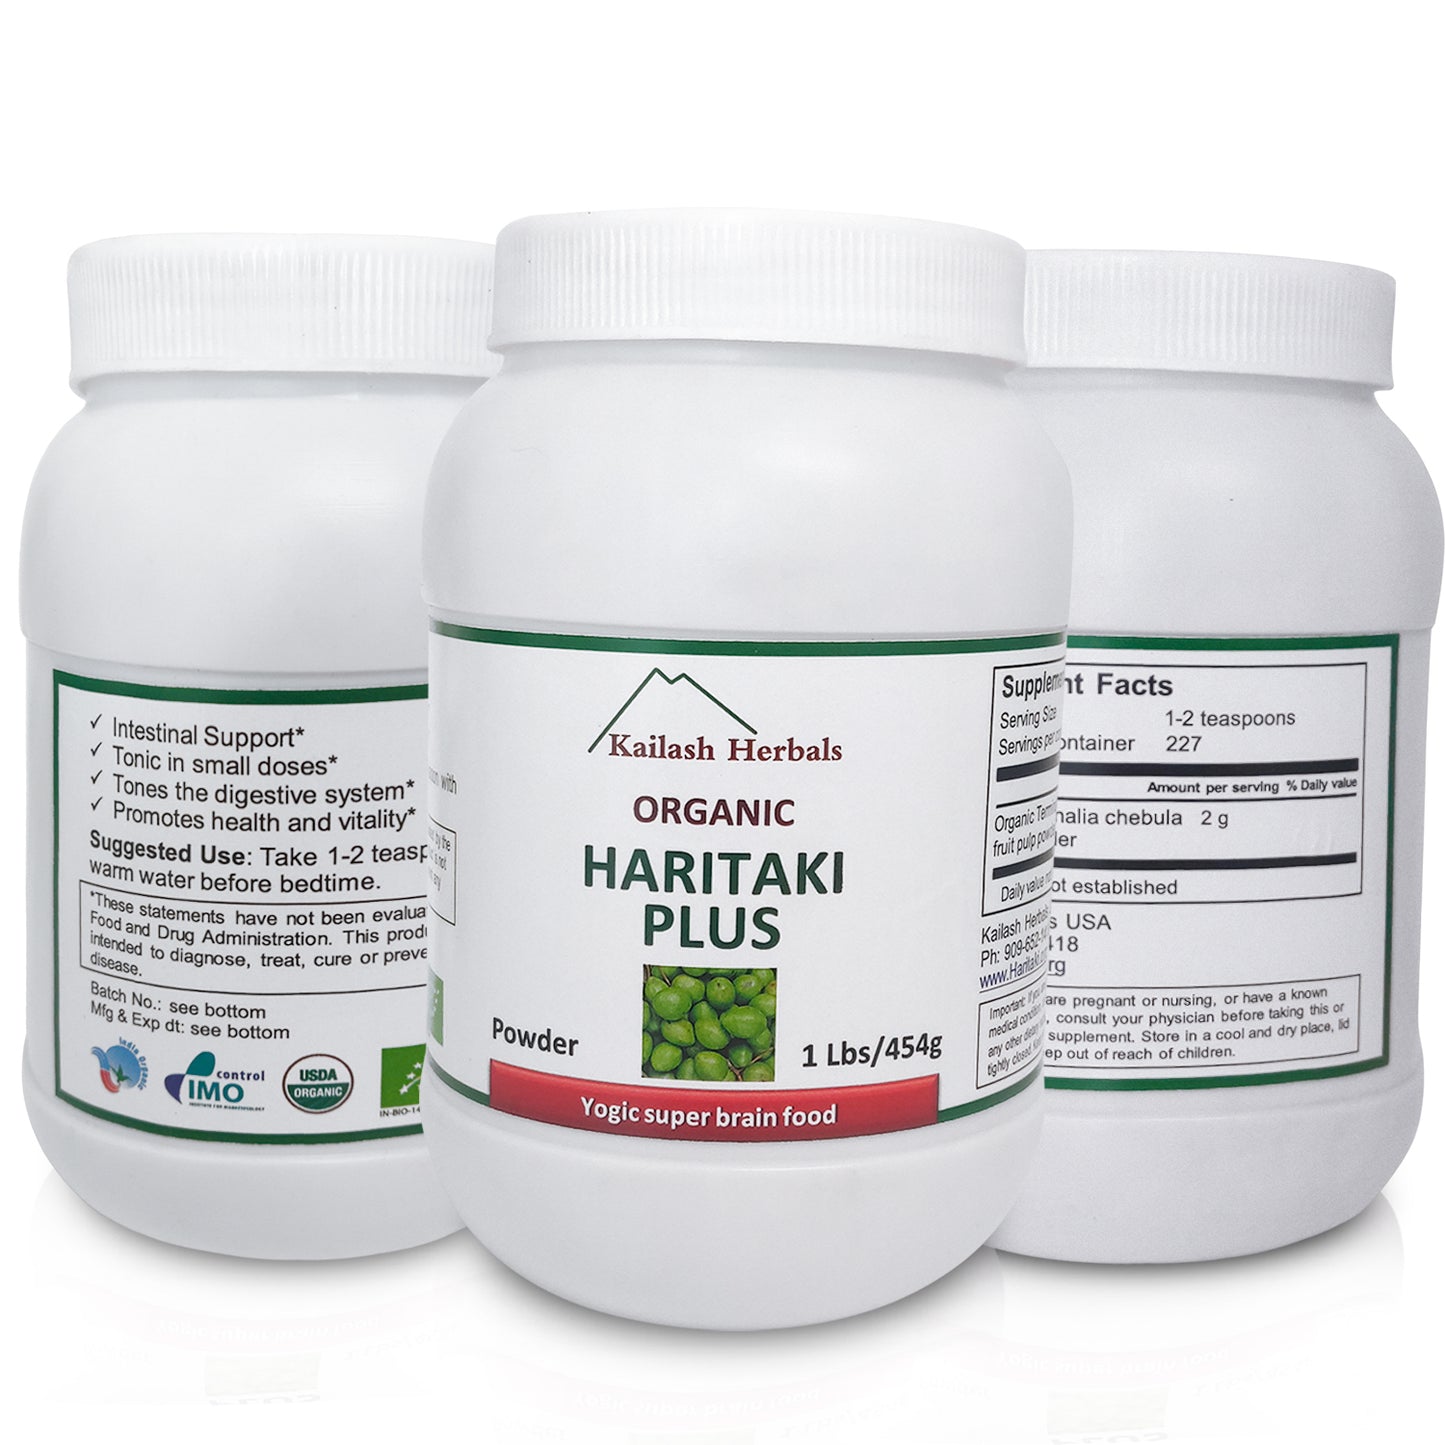 
                  
                    1 LB Powder | USDA Organic Haritaki Plus, Chebula powder
                  
                